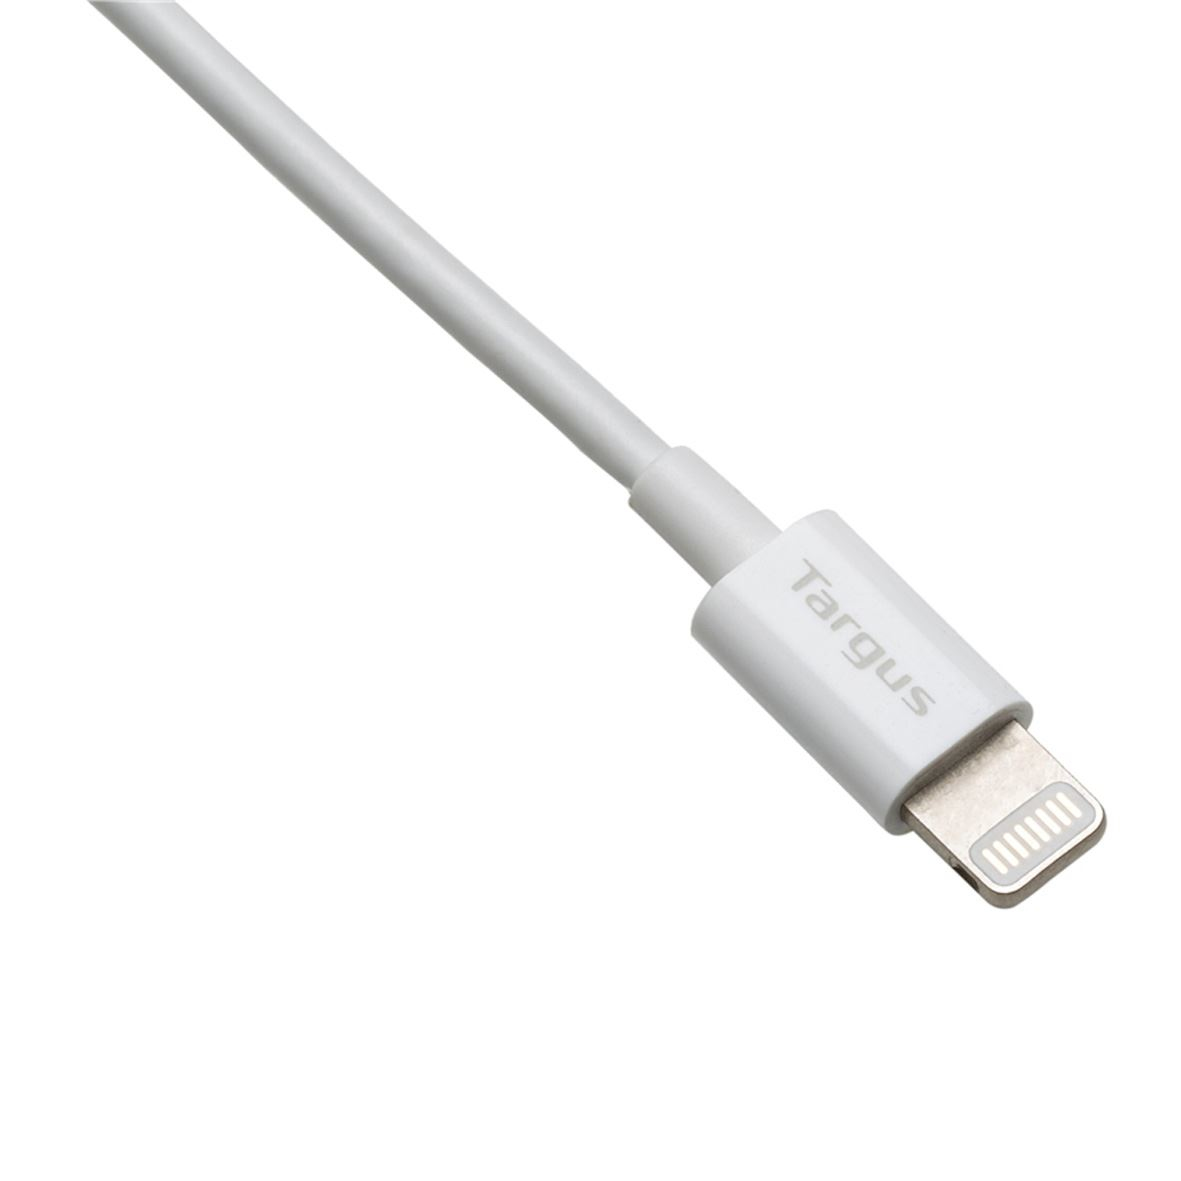 Targus Lightning-Kabel - Lightning (M) bis USB (M)